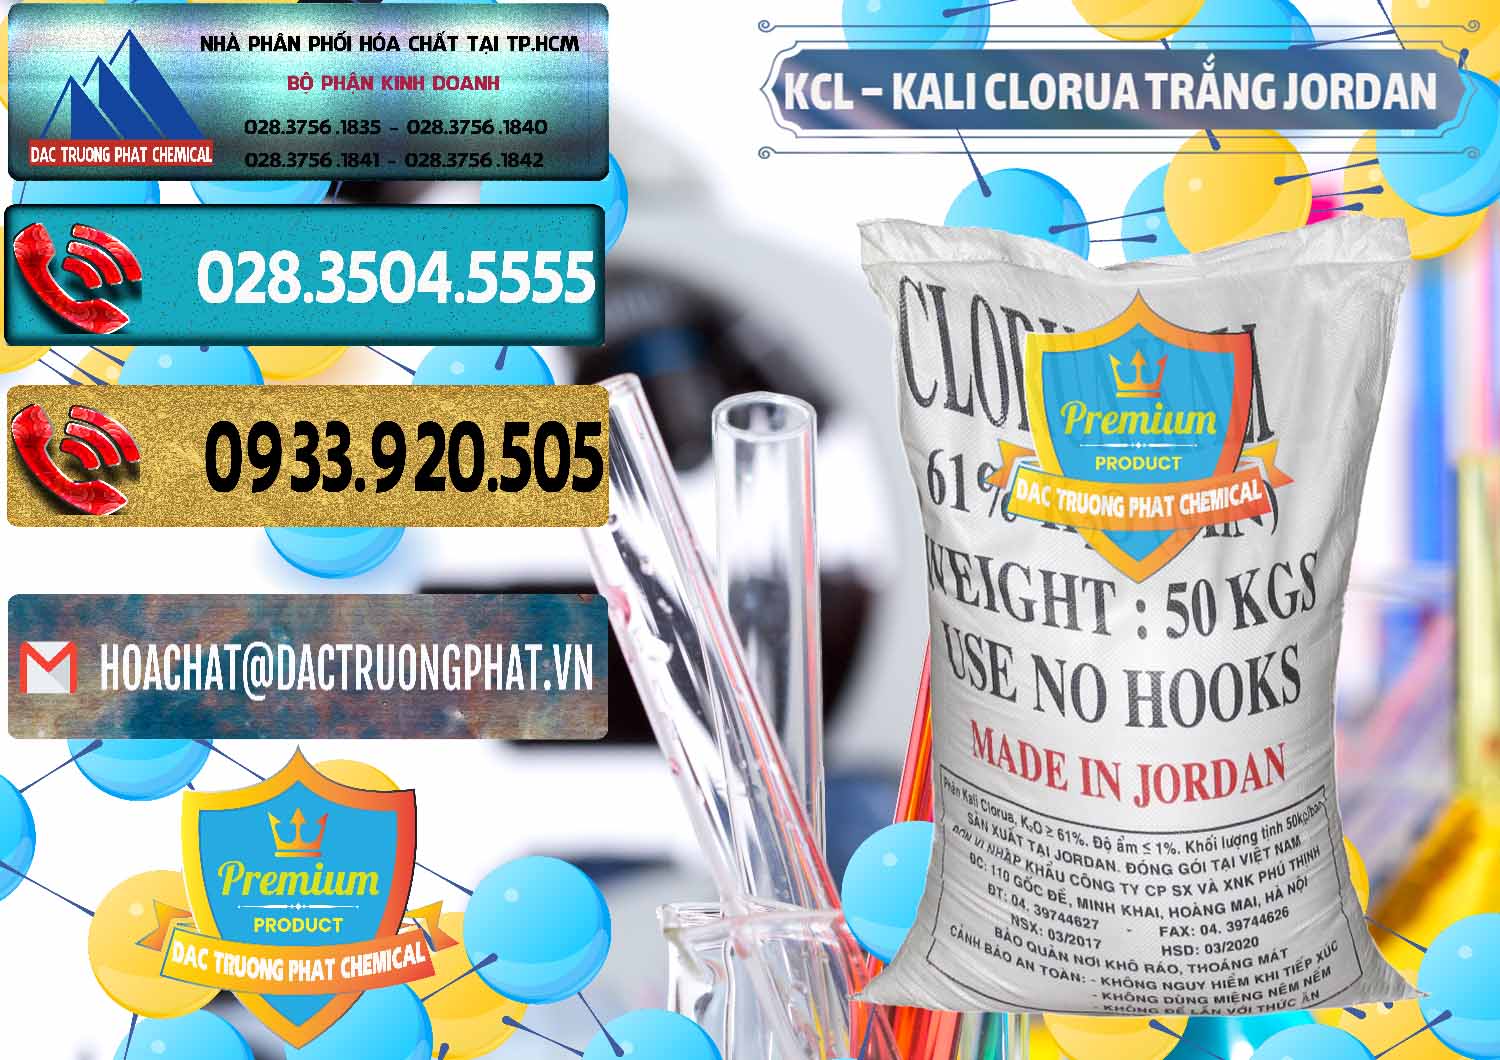 Công ty chuyên phân phối _ bán KCL – Kali Clorua Trắng Jordan - 0088 - Cty phân phối - cung ứng hóa chất tại TP.HCM - hoachatdetnhuom.com